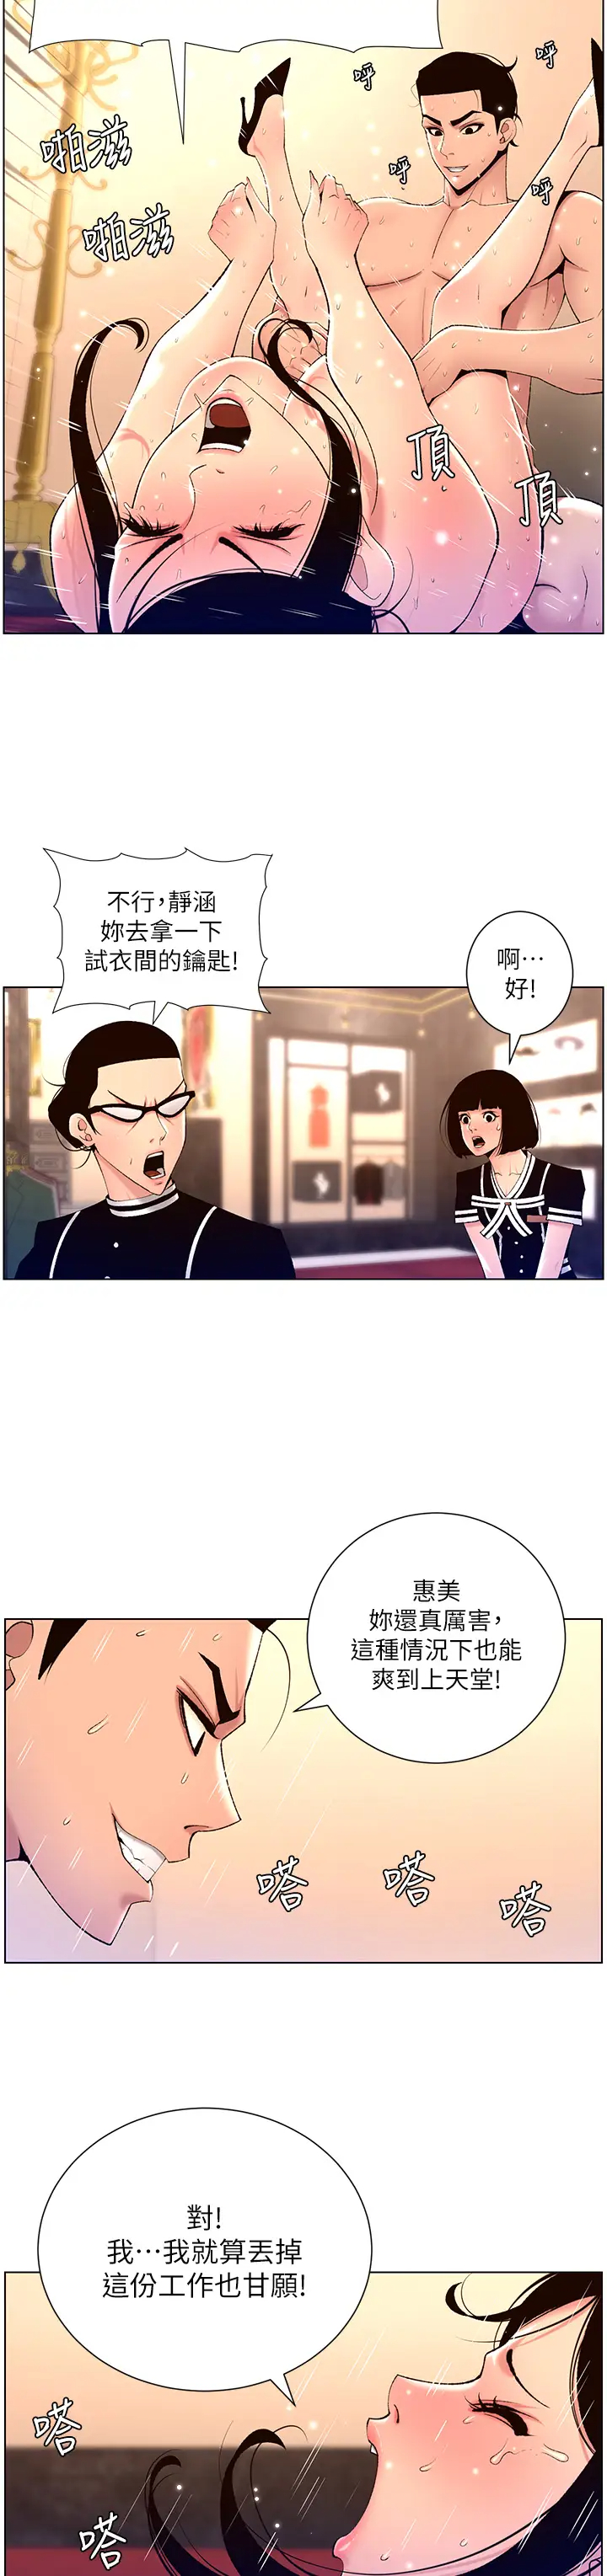 韩国污漫画 帝王App 第27话 让正妹柜姊爽到上天堂 9